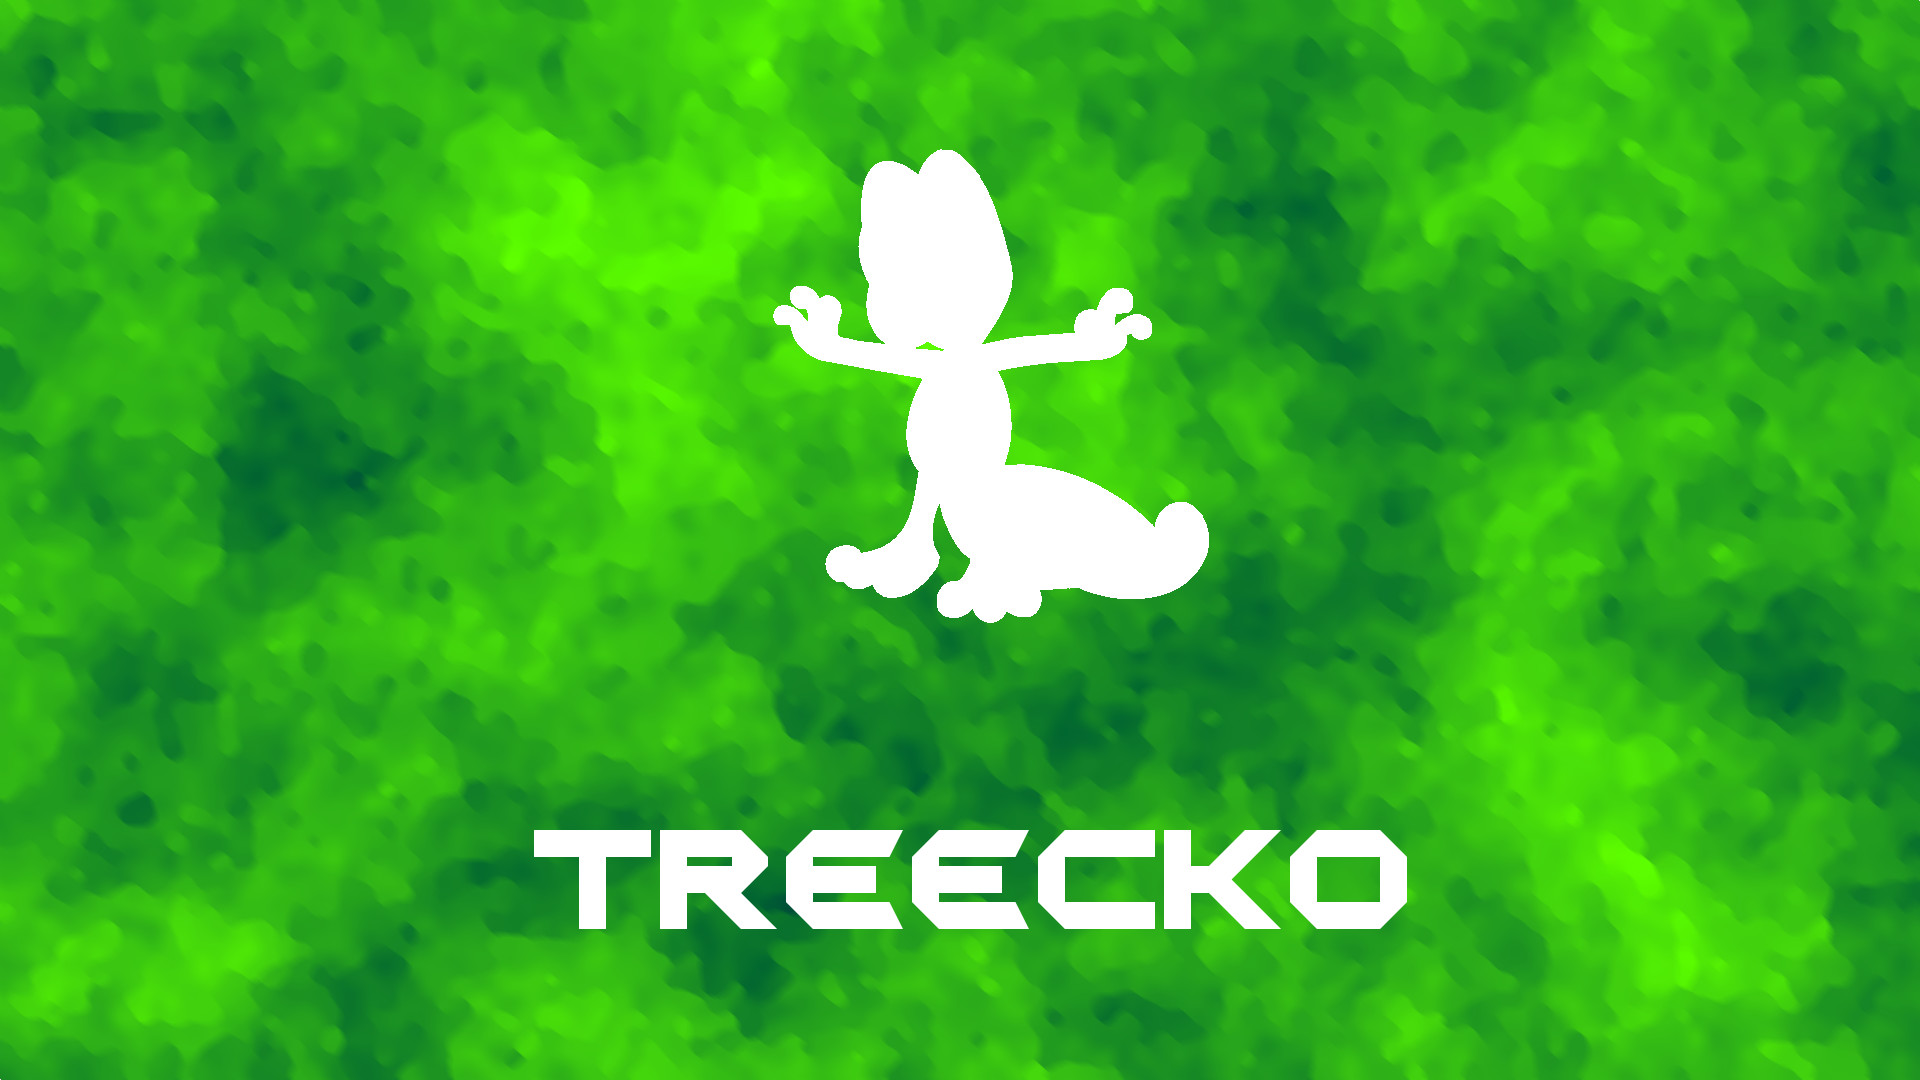 1920x1080 Treecko Wallpaper by TokageLP Treecko Wallpaper by TokageLP